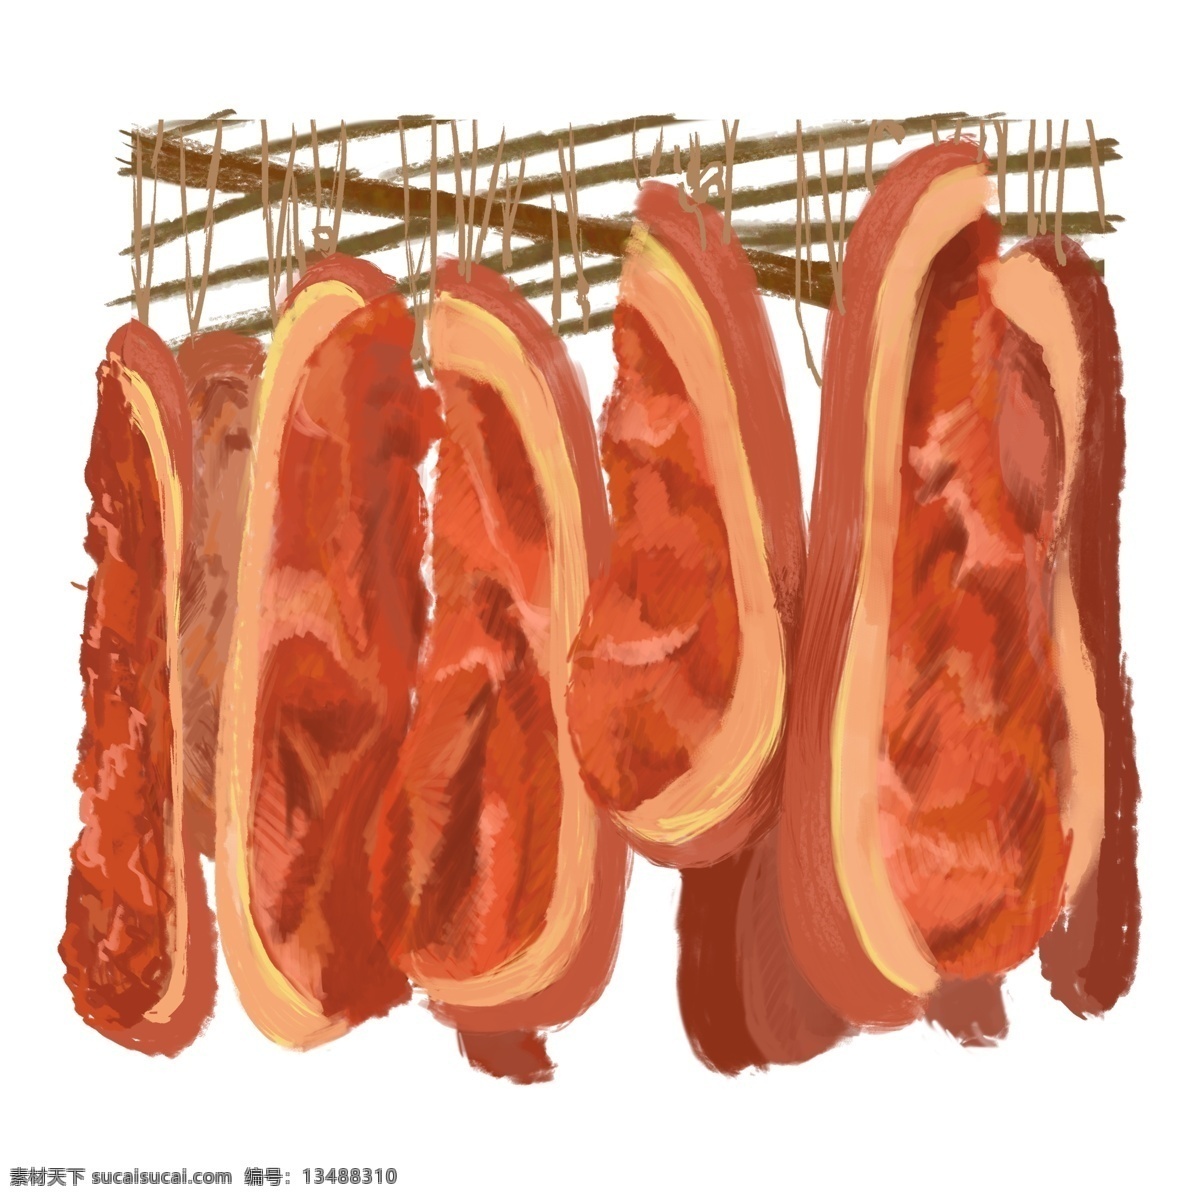 年货 手绘 冬季 食物 插画 腊肉 组合 食物组合 卡通插画风格 海报 banner